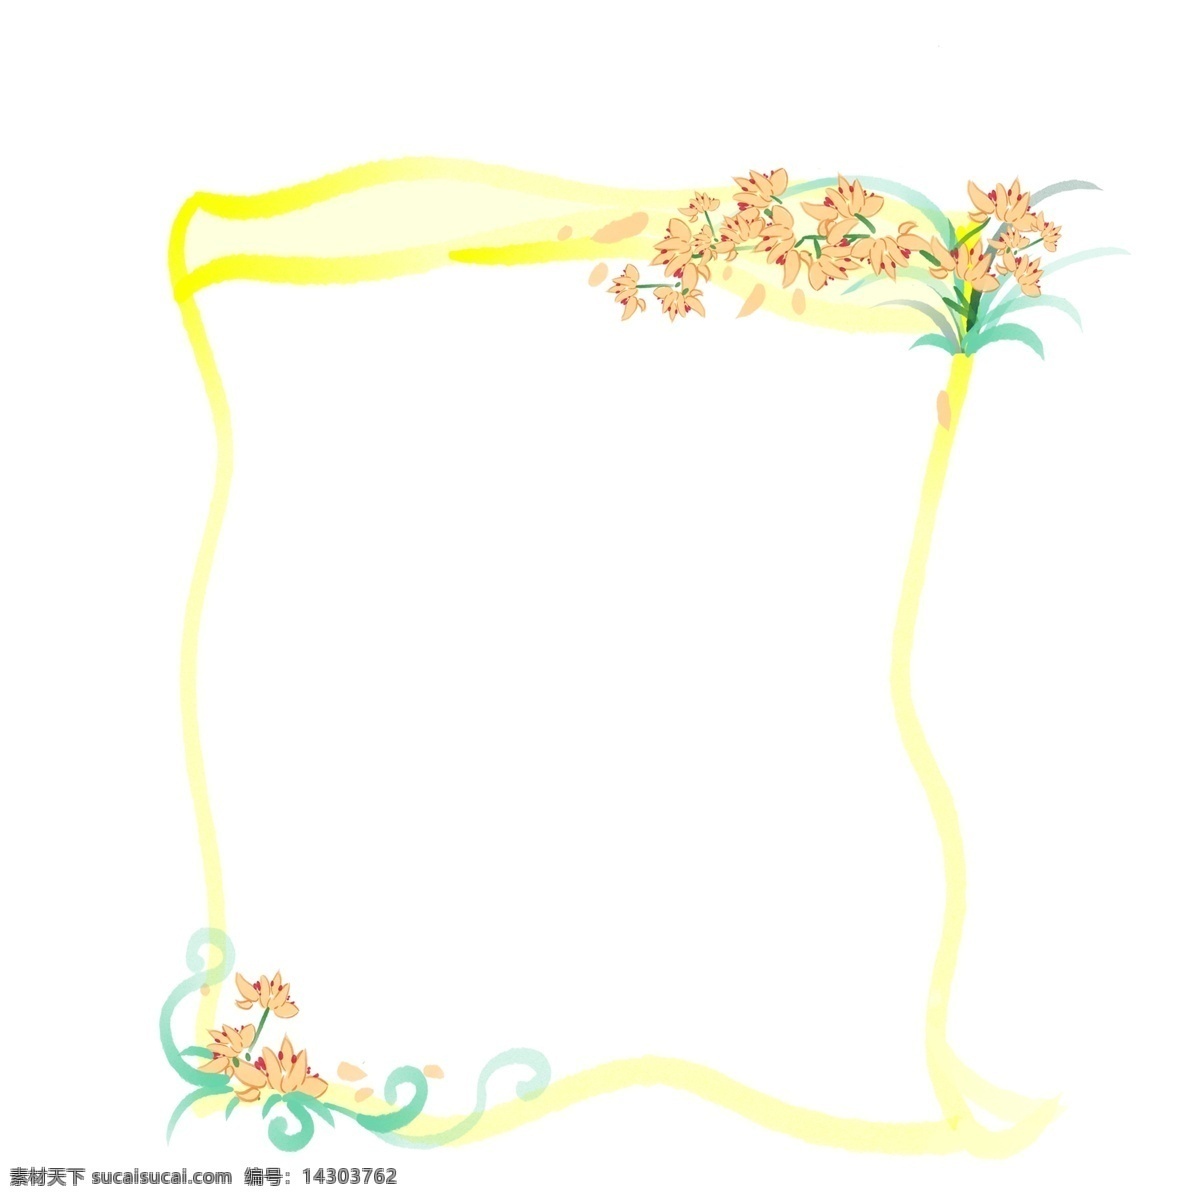 黄色 花朵 花卉 边框 黄色的边框 漂亮的花卉 卡通边框 花卉边框 鲜花边框 花朵边框 花环边框